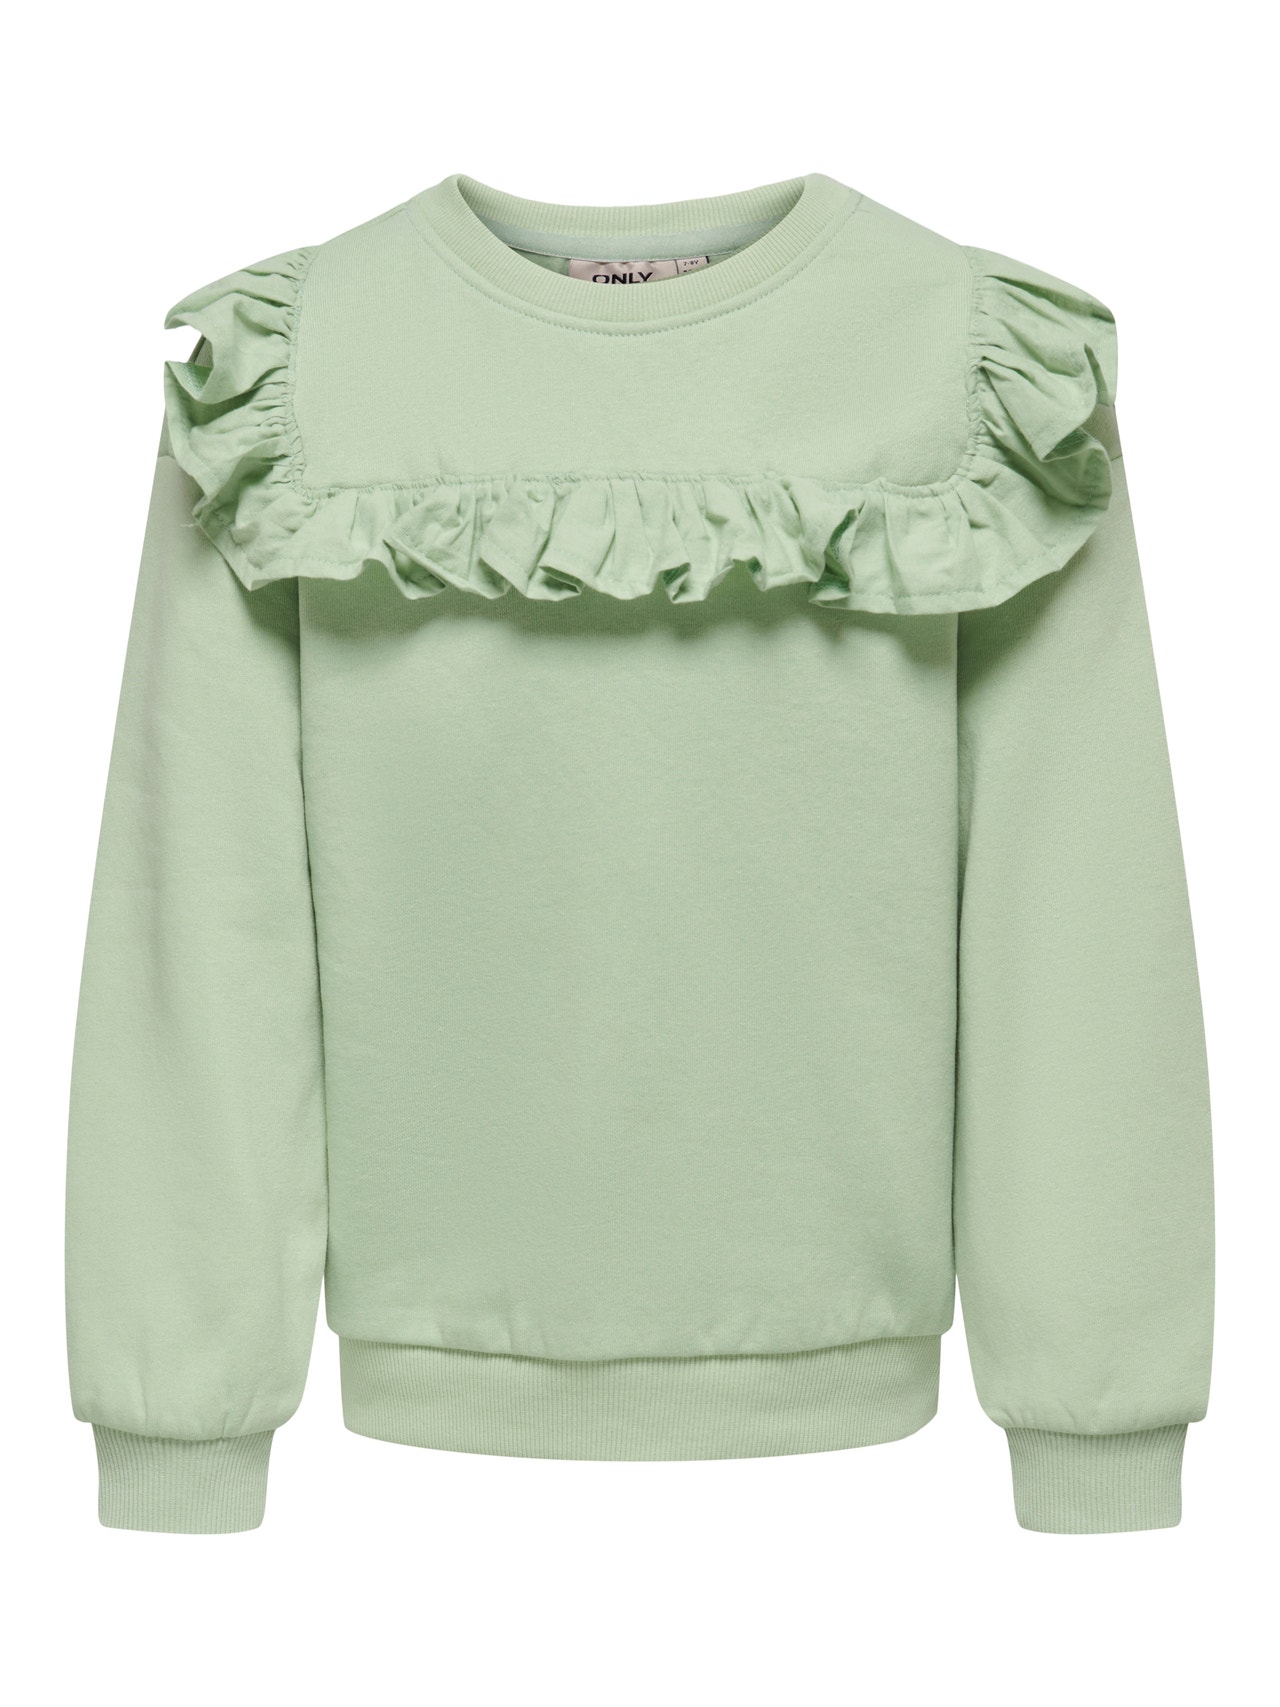 ONLY Sweatshirt med flæsedetalje -Smoke Green - 15283811